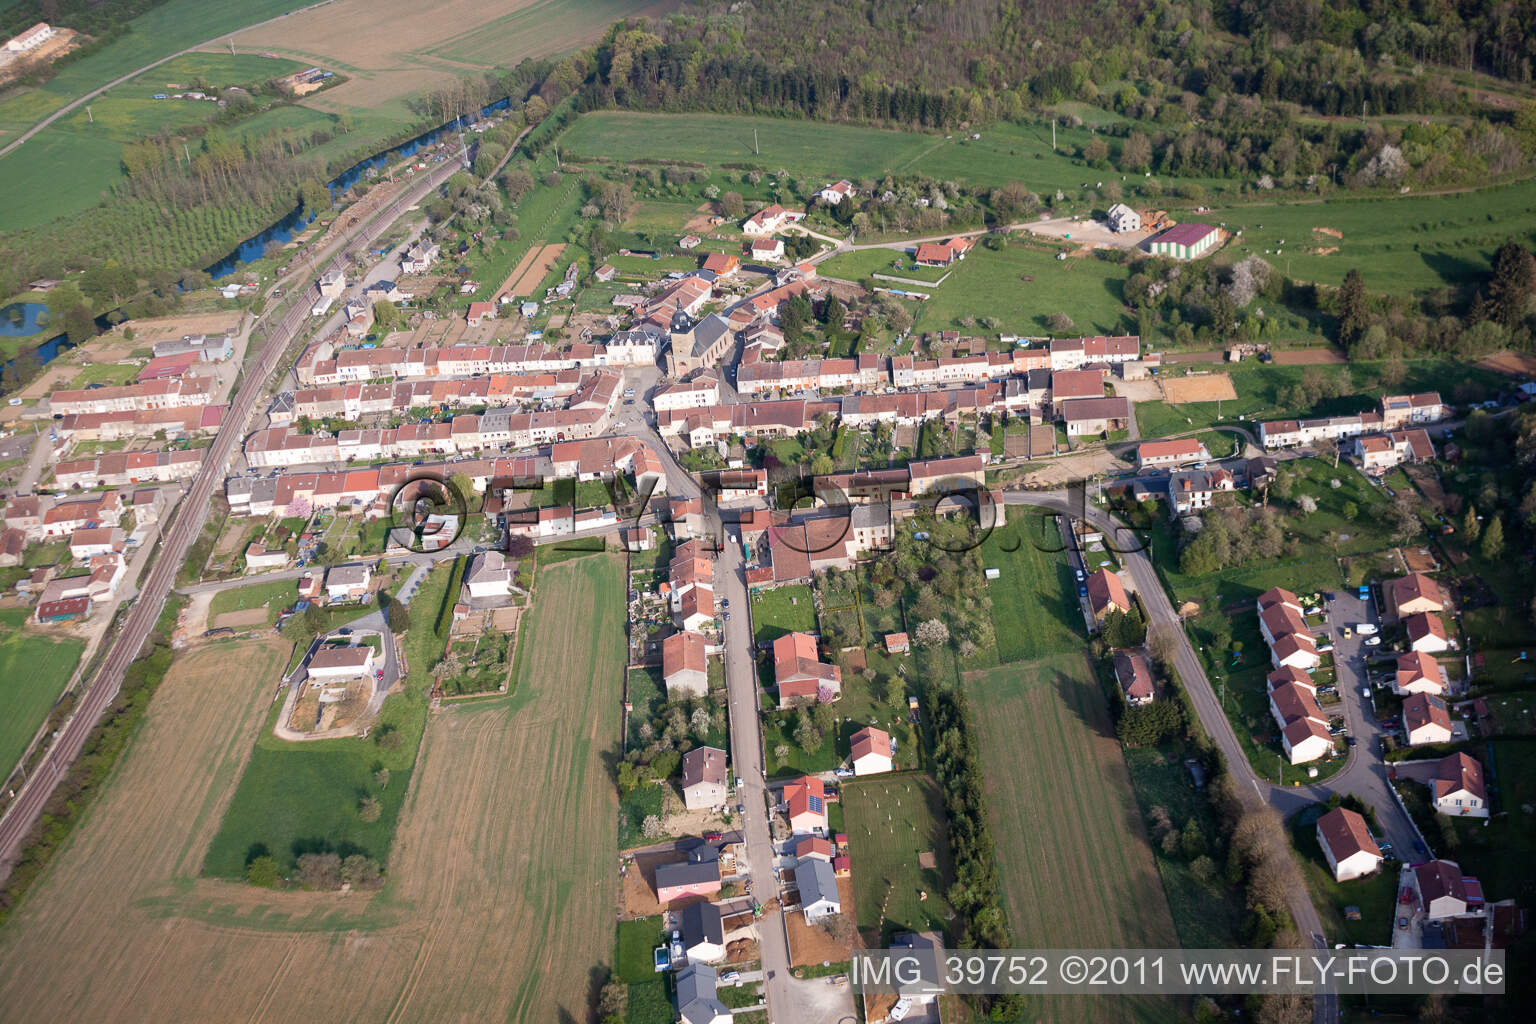 Vue aérienne de Champs agricoles et surfaces utilisables à Charency-Vezin dans le département Meurthe et Moselle, France